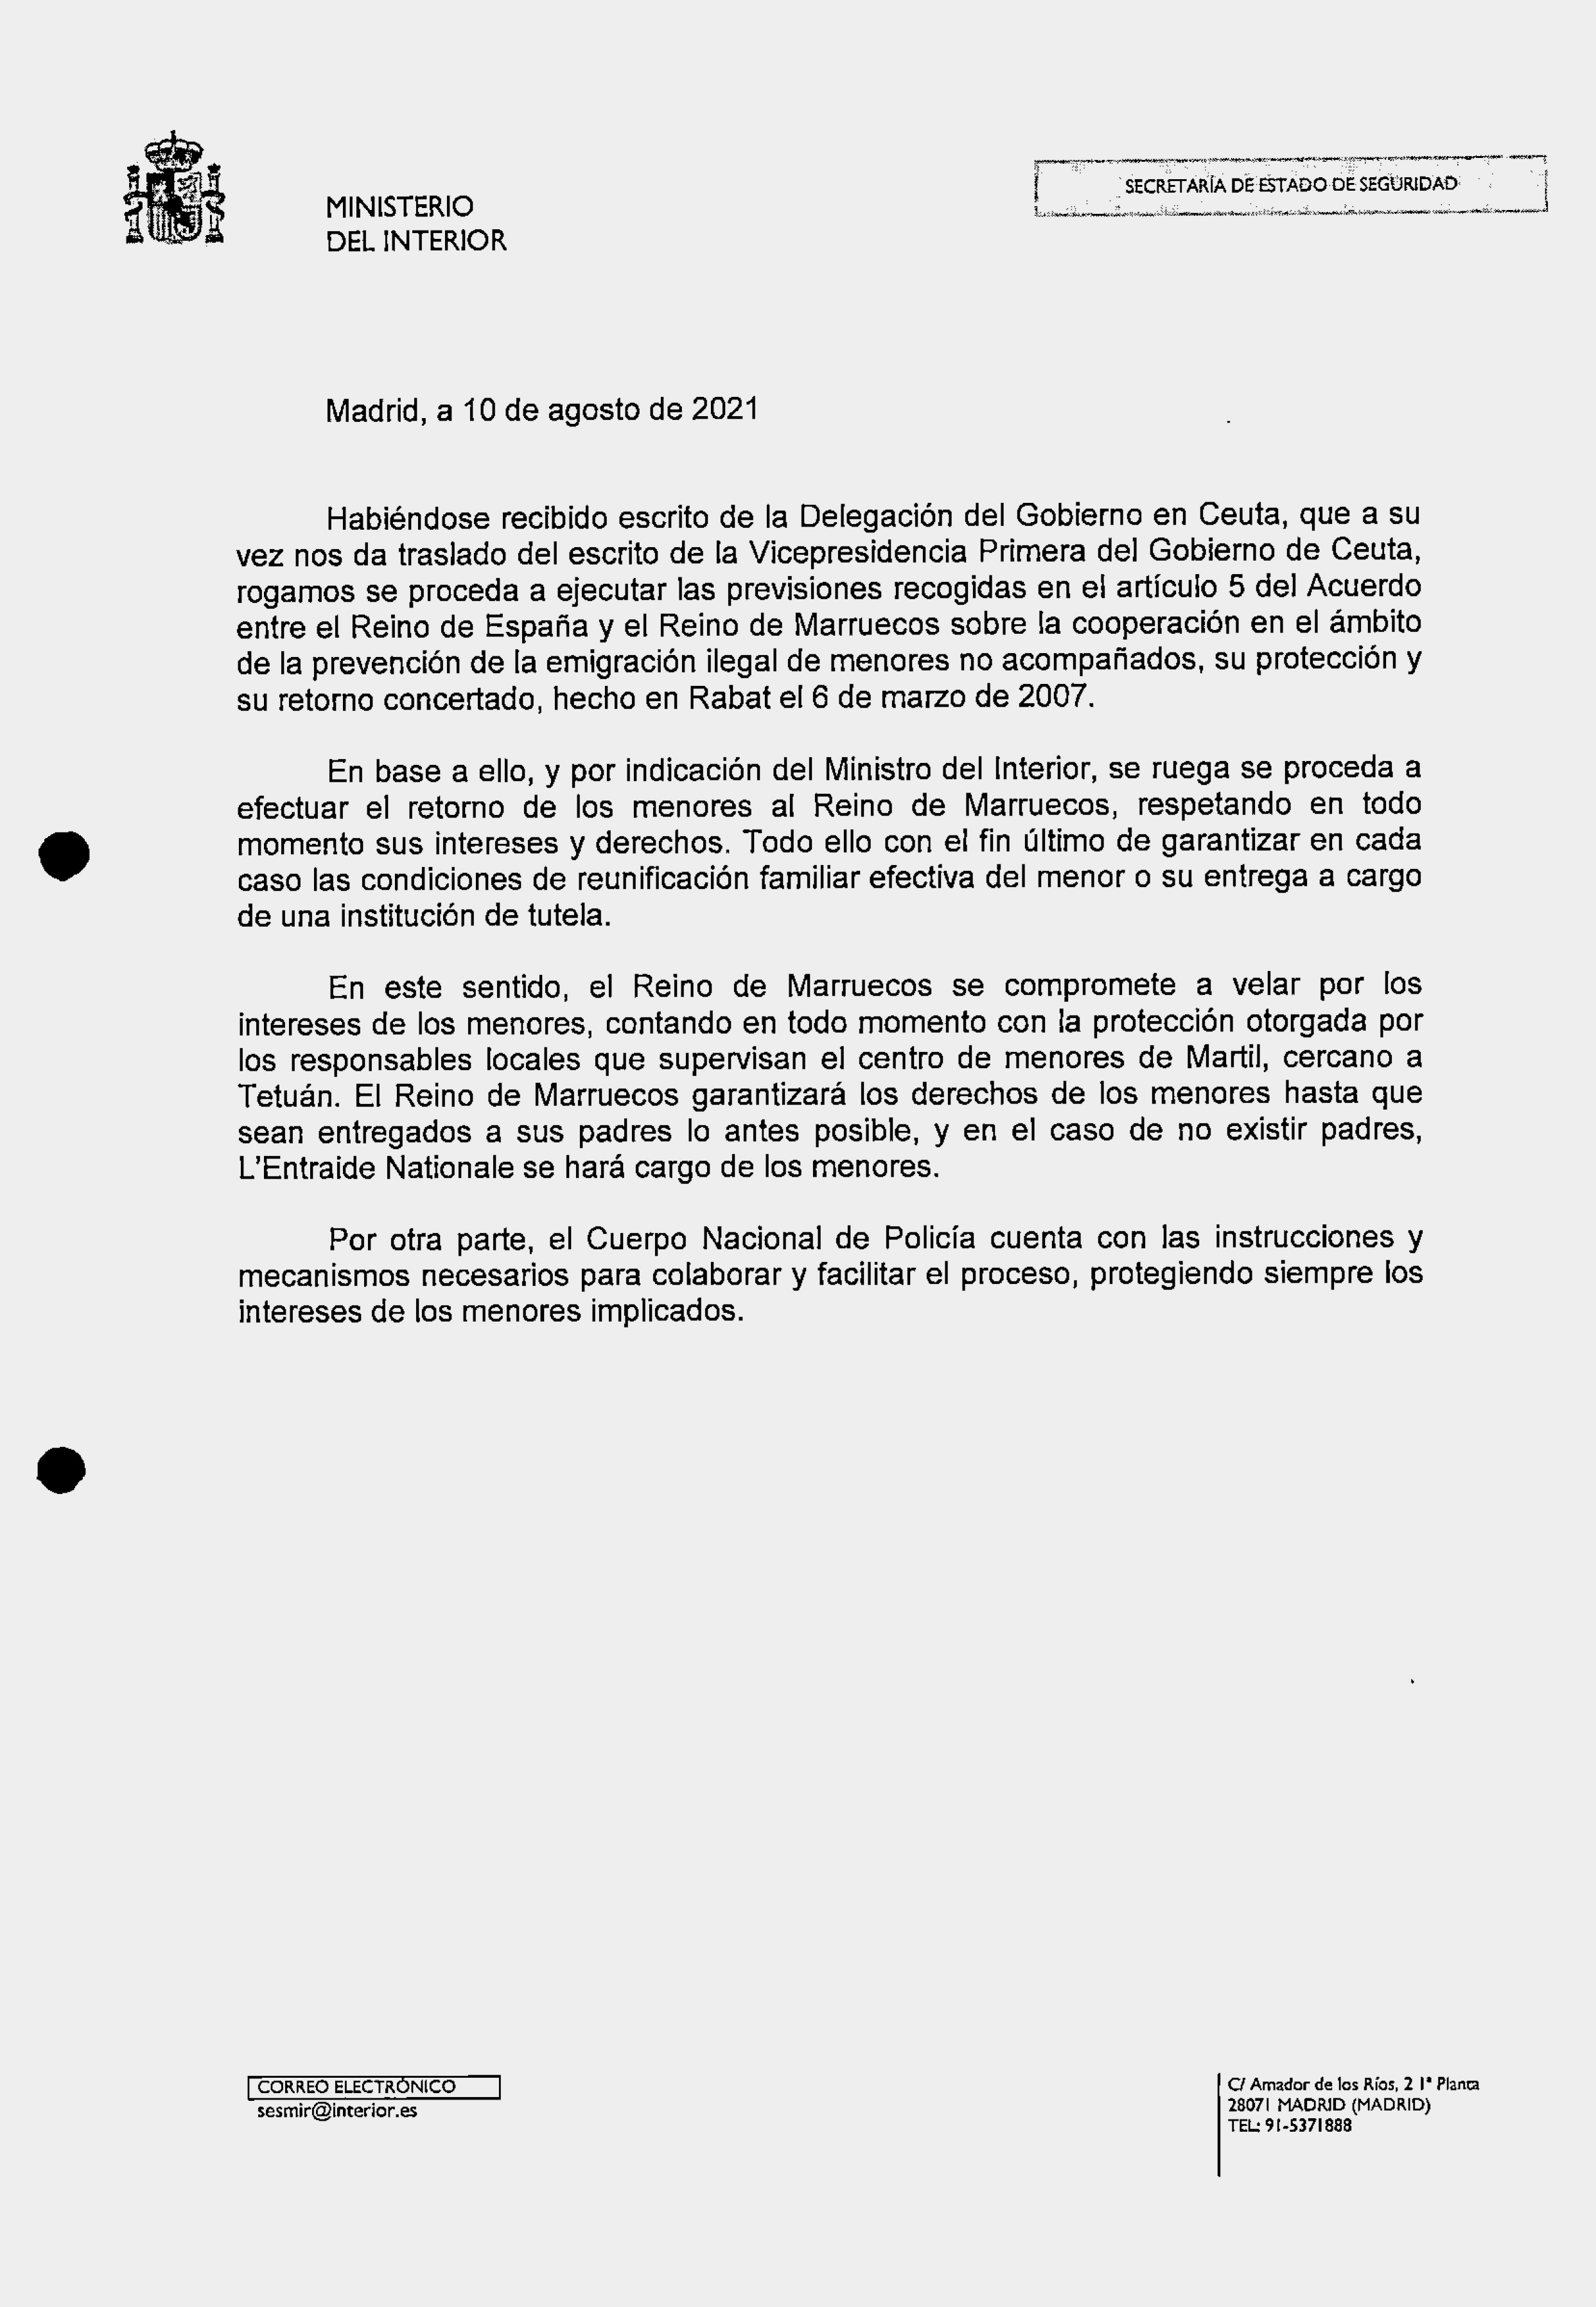 Extracto del e-mail remitido por Interior a Ceuta.